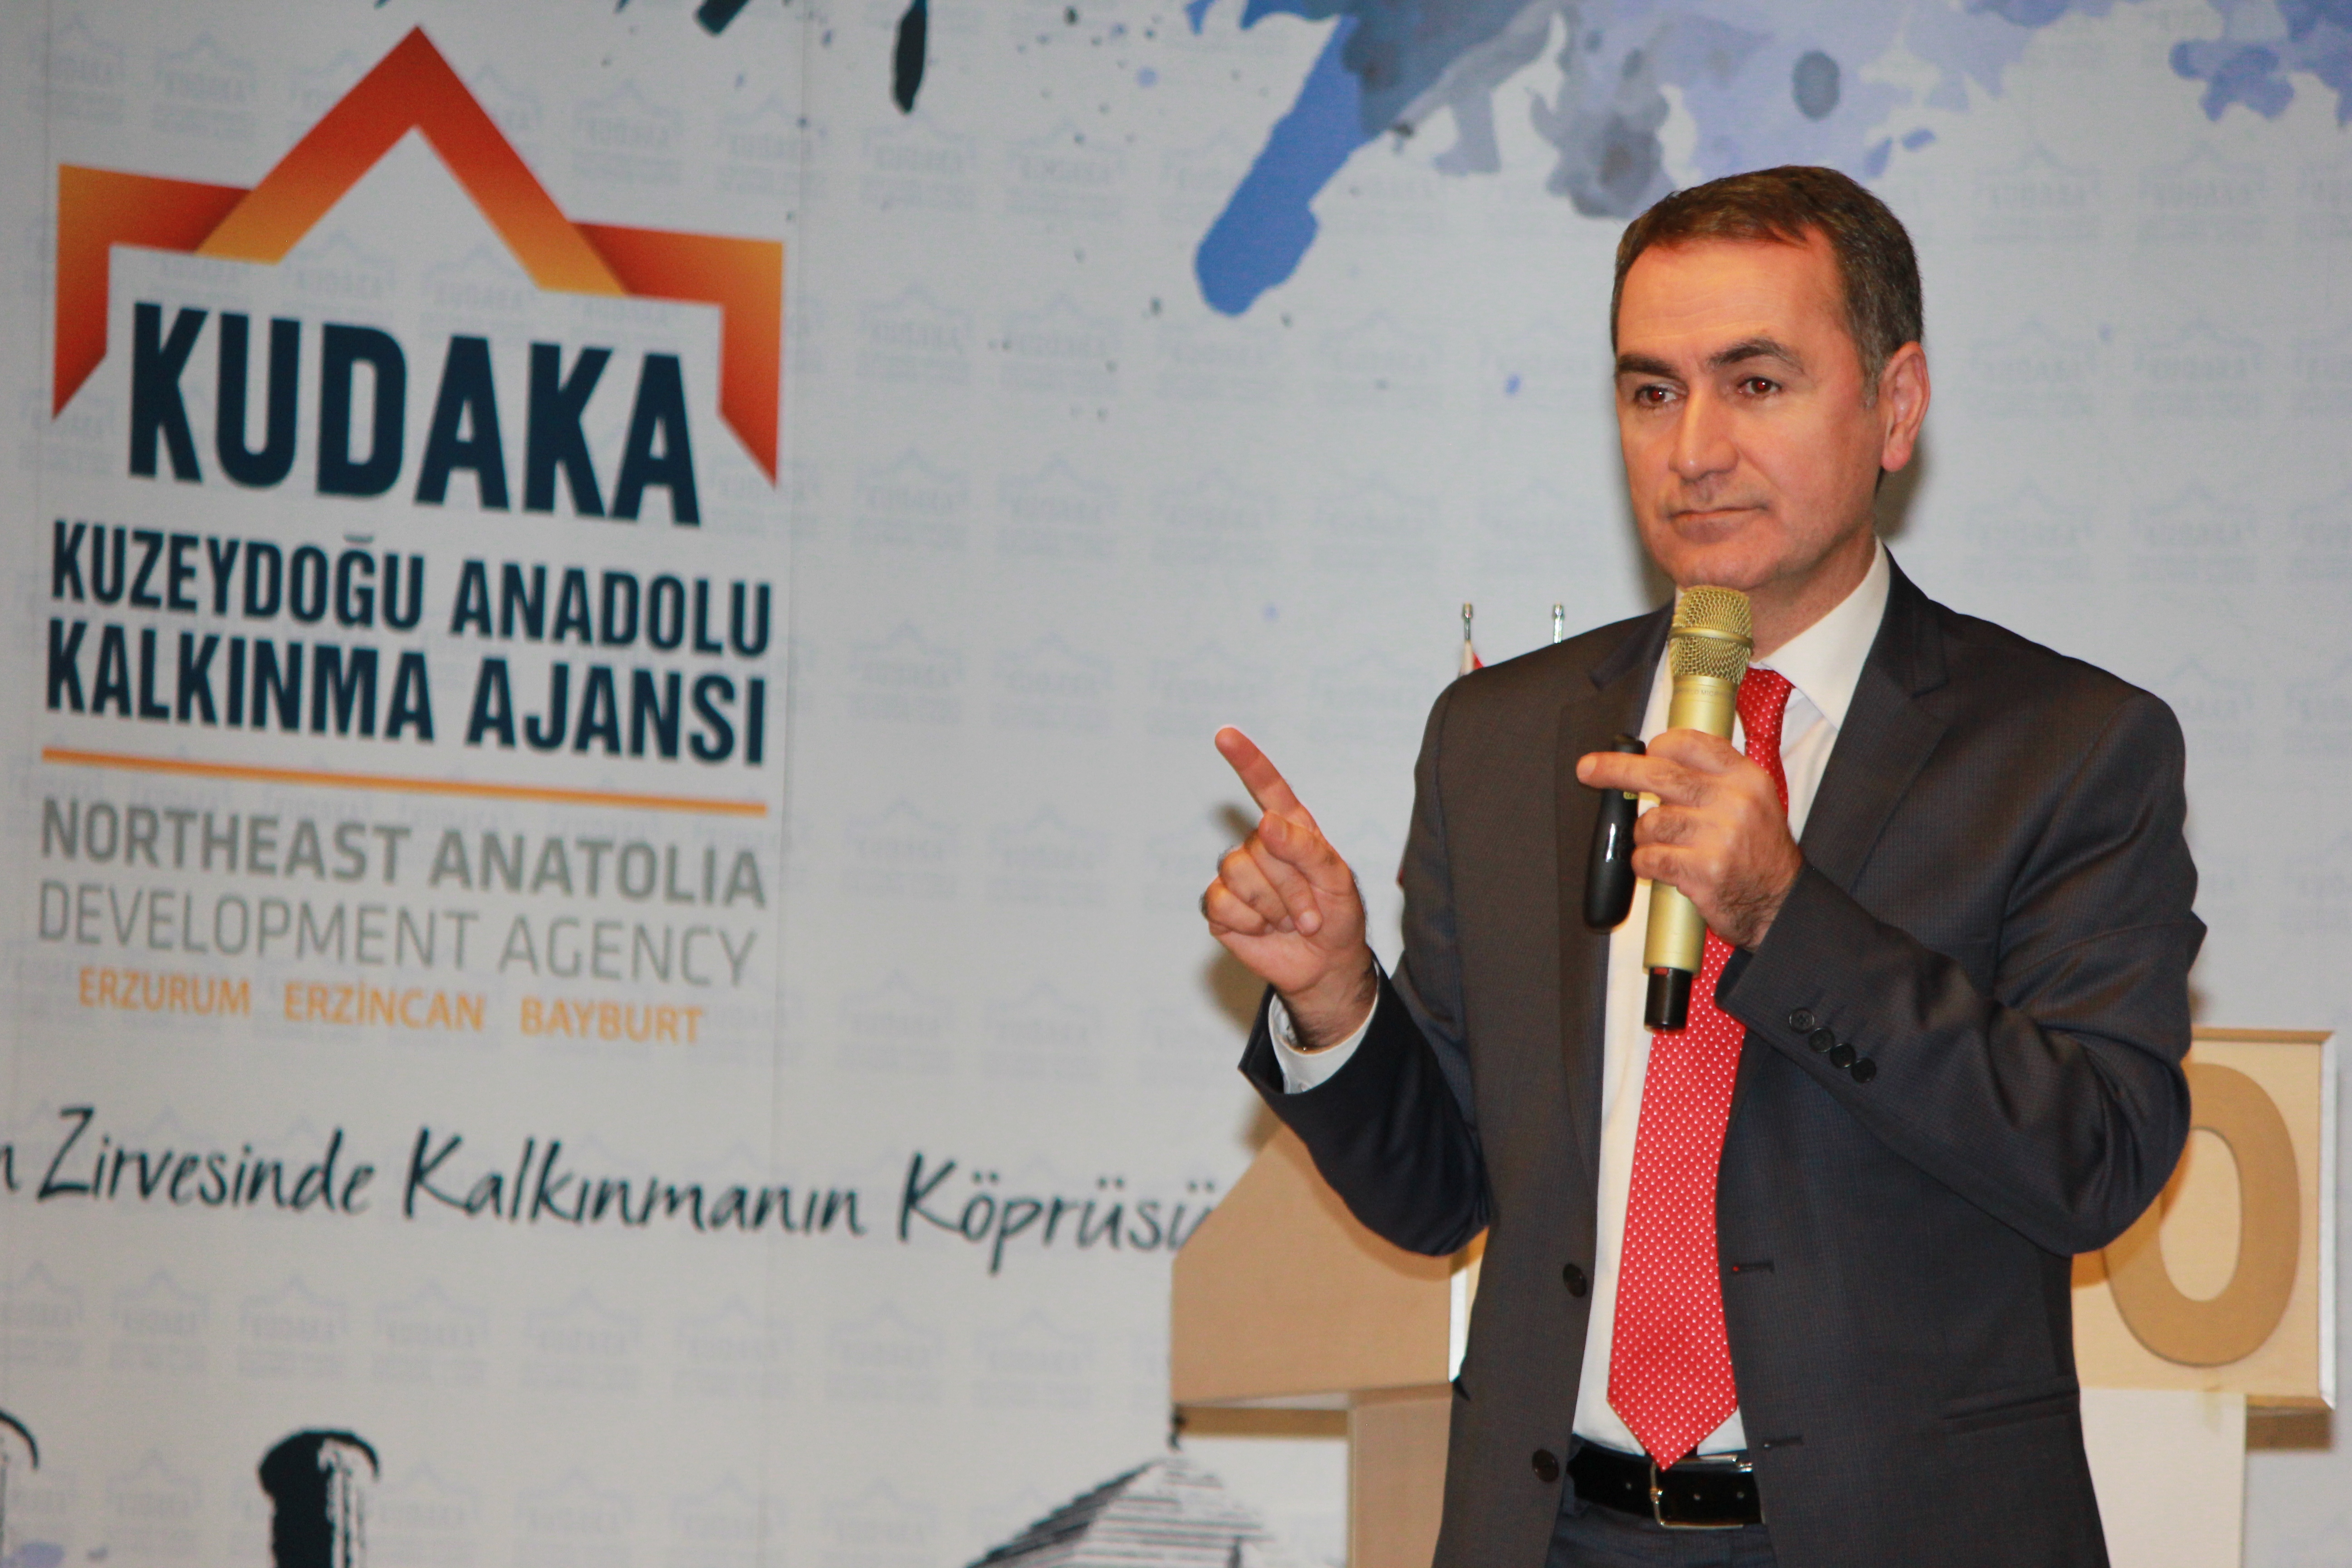 Vakfımızın kurucusu Dr. İlhami Fındıkçı Kuzeydoğu Anadolu Kalkınma Ajansı (KUDAKA) Anahtar Çözümler programlarına katıldı.